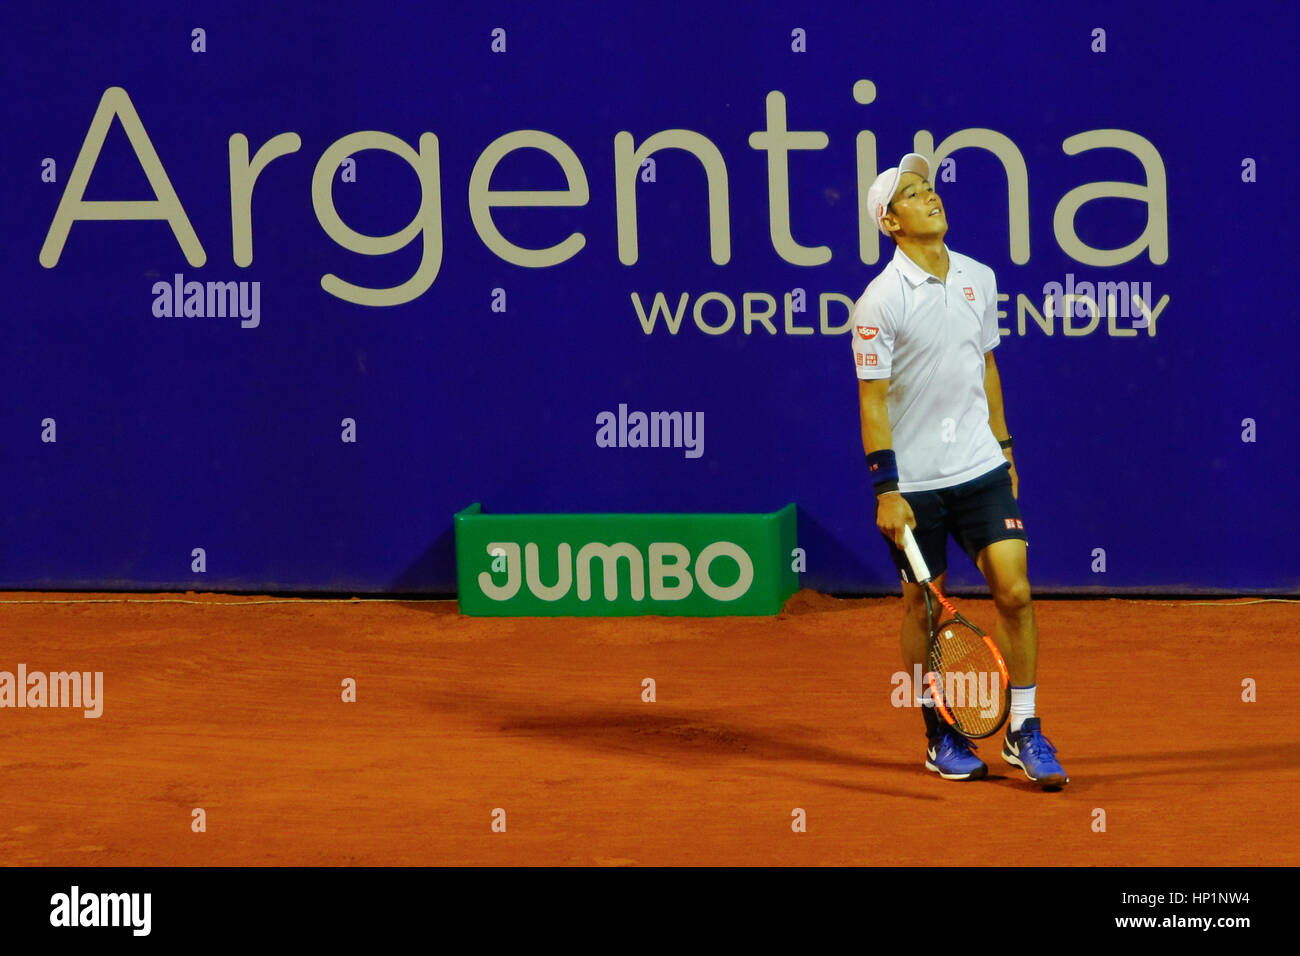 Buenos Aires, Argentine. Feb 17, 2017. Kei Nishikori remporte le match quart de finale de l'ATP 250 de Buenos Aires. Crédit : J. Beremblum Néstor/Alamy Live News Banque D'Images